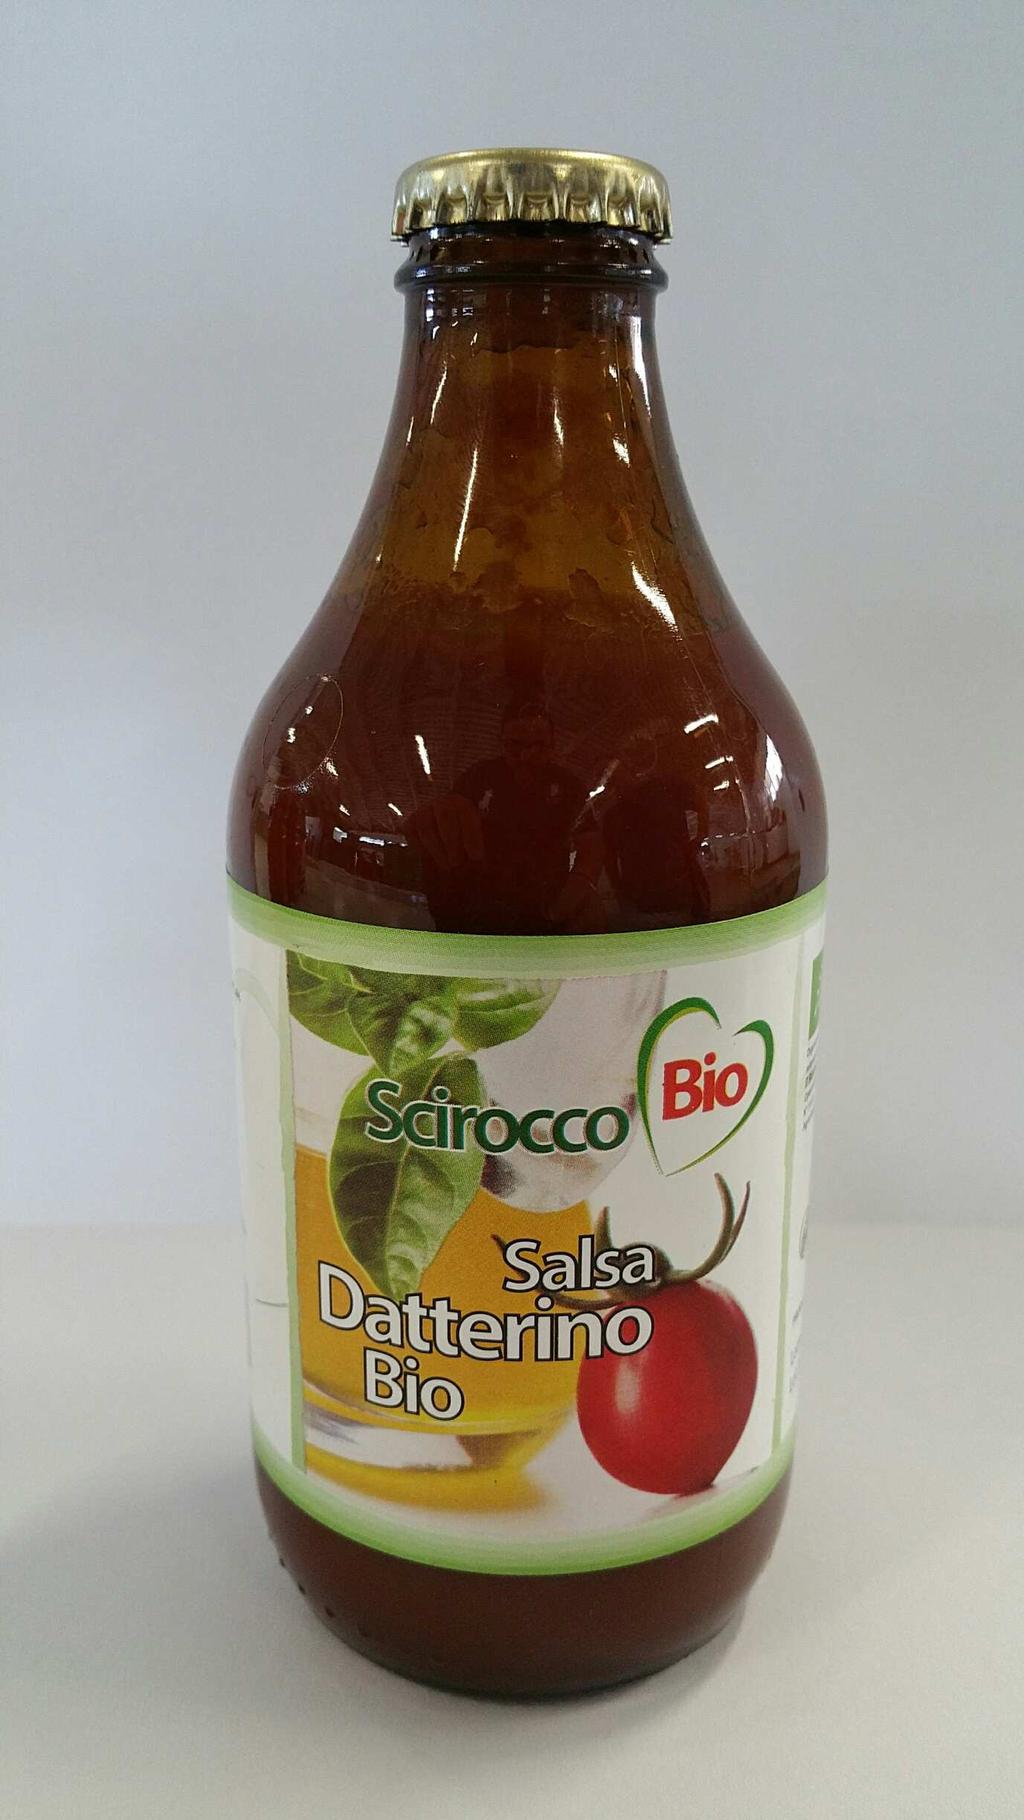 SALSA DI POMODORO CILIEGINO BIO INGREDIENTI: Pomodoro ciliegino da agricoltura biologica (95% min), olio extravergine d oliva, sale.